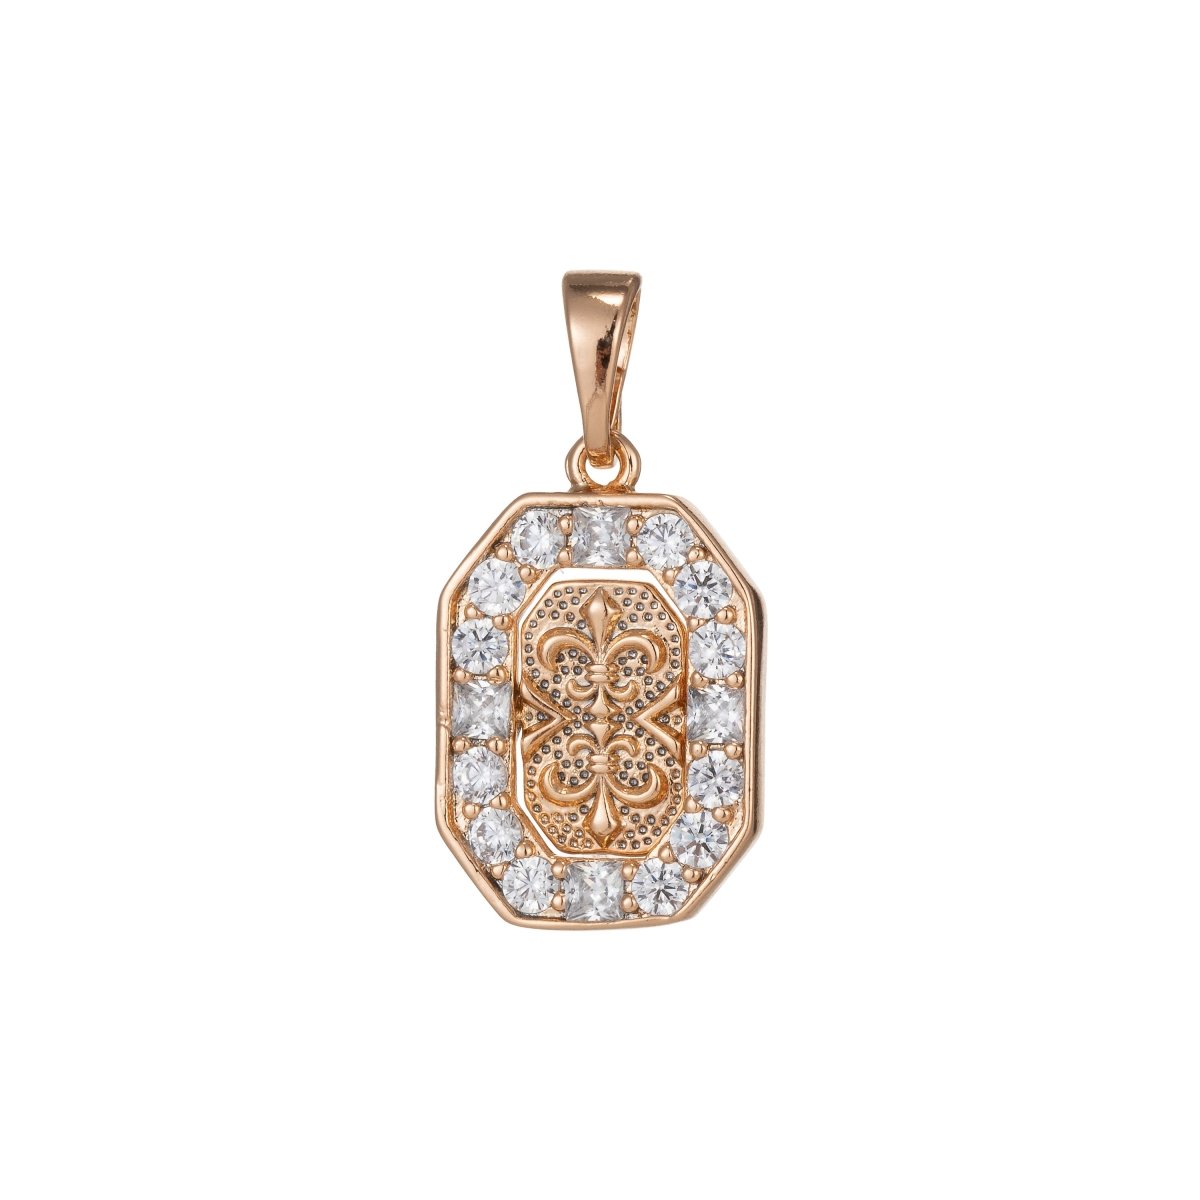 18k Gold Filled fleur de lis Pendant for Necklace Charm Micro Pave Medallion Pendant, D-152 - DLUXCA